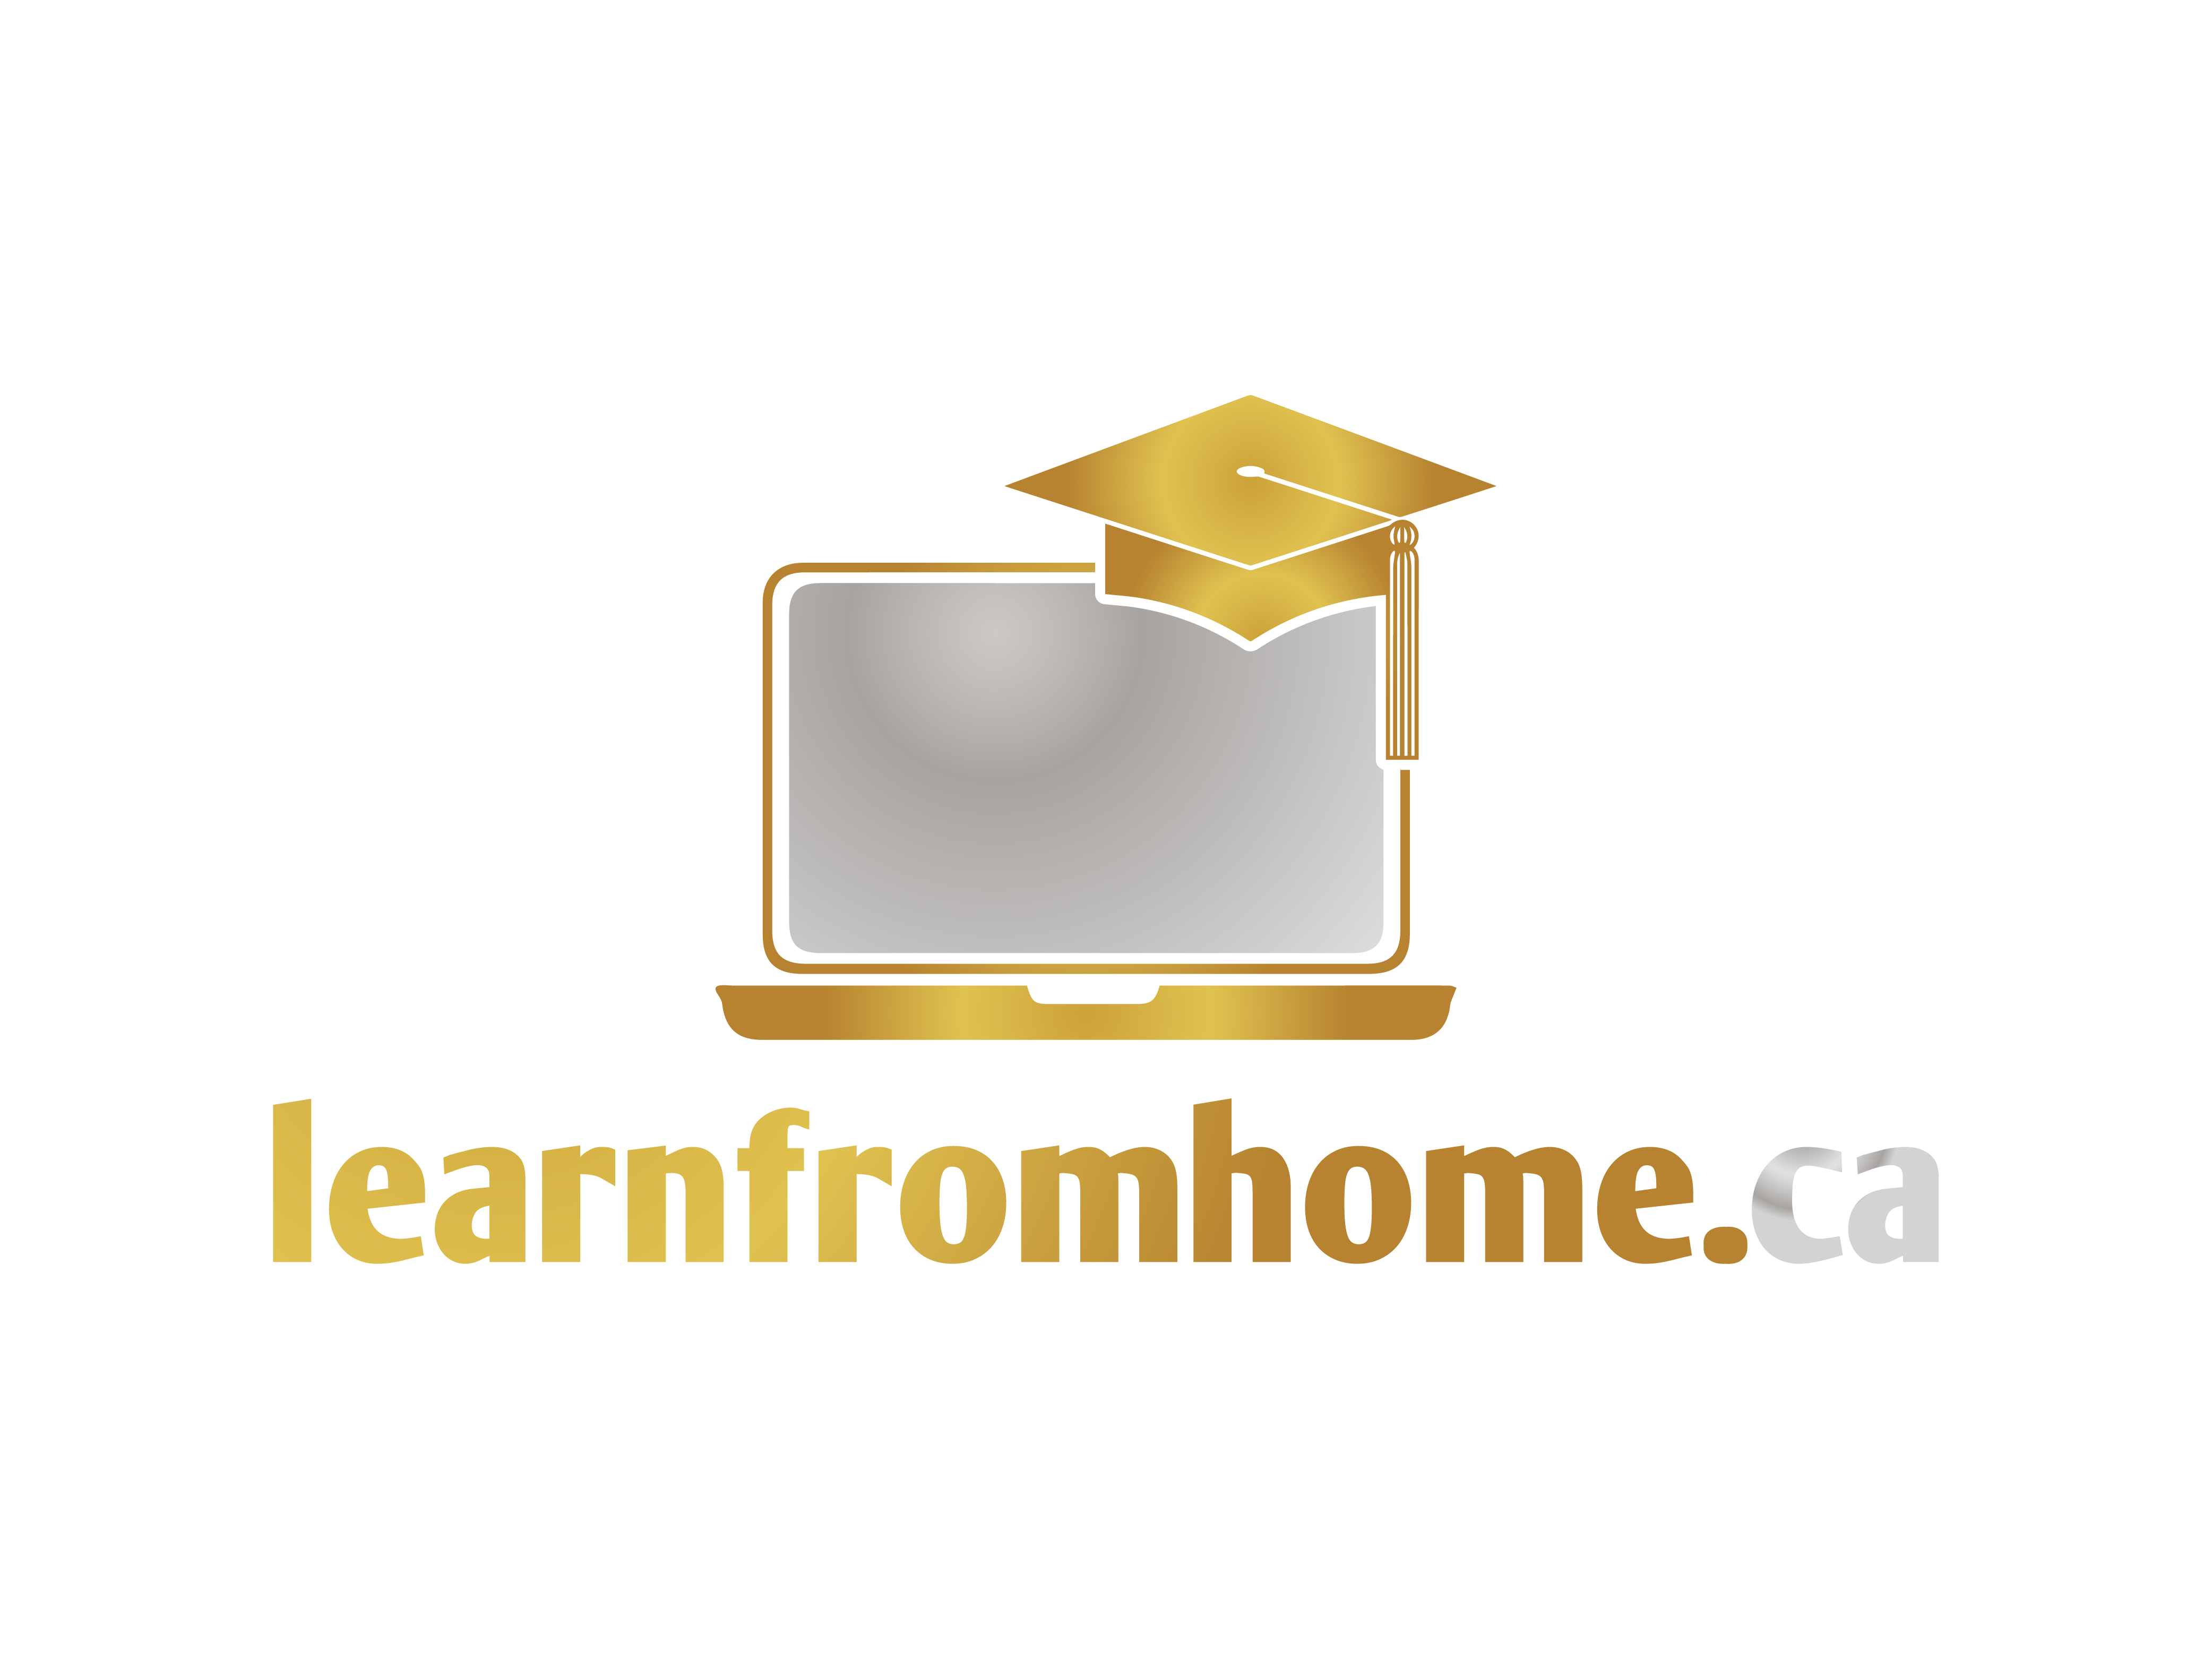 LearnFromHome.ca